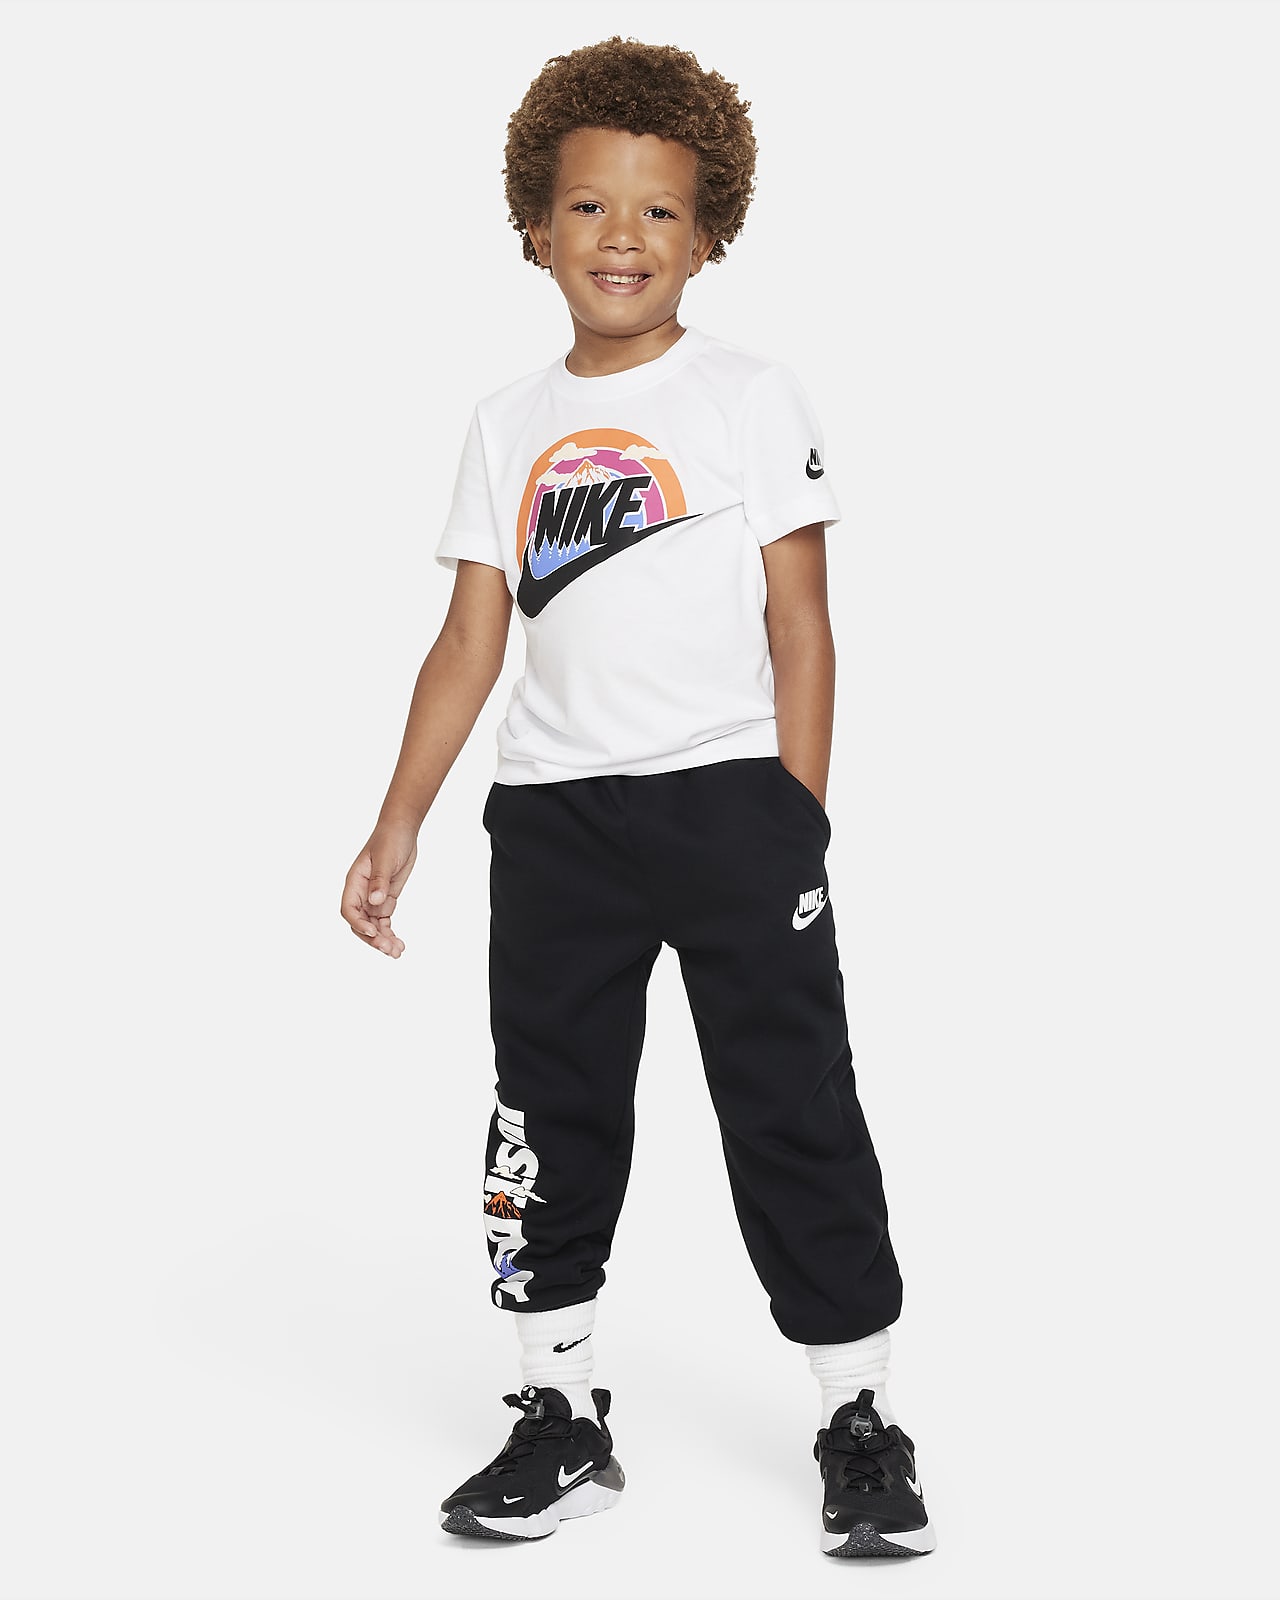 Nike Wilderness Futura Tee Kids T-Shirt. Little